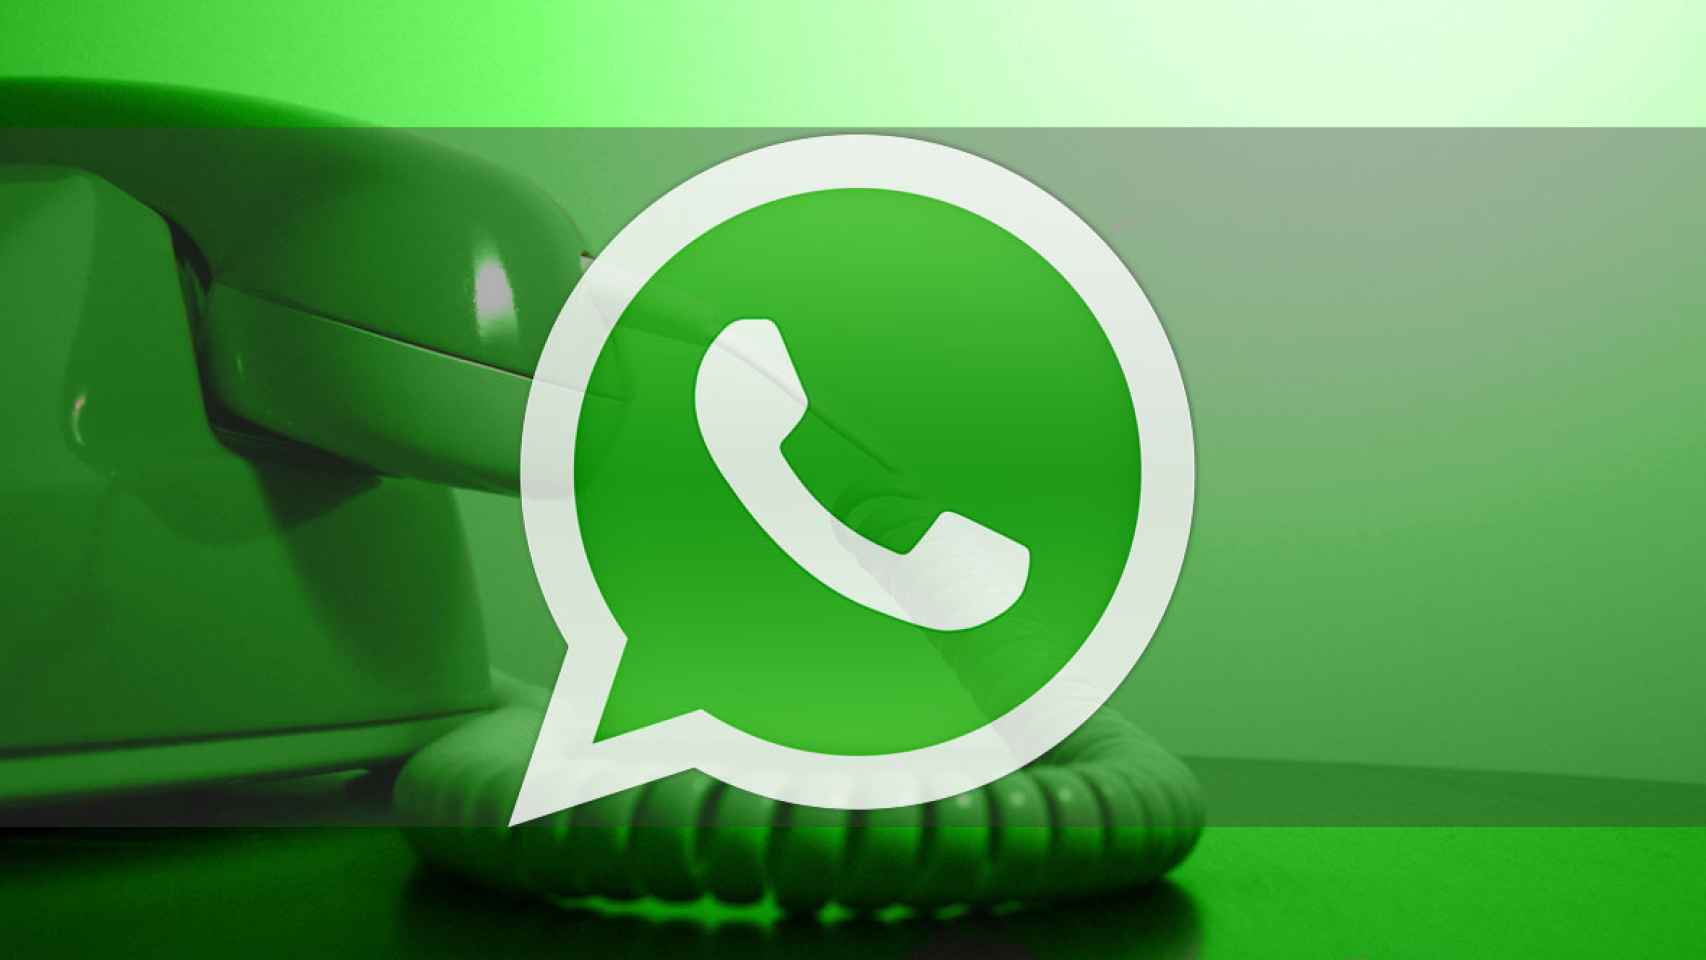 WhatsApp mejora la interfaz para las llamadas de voz